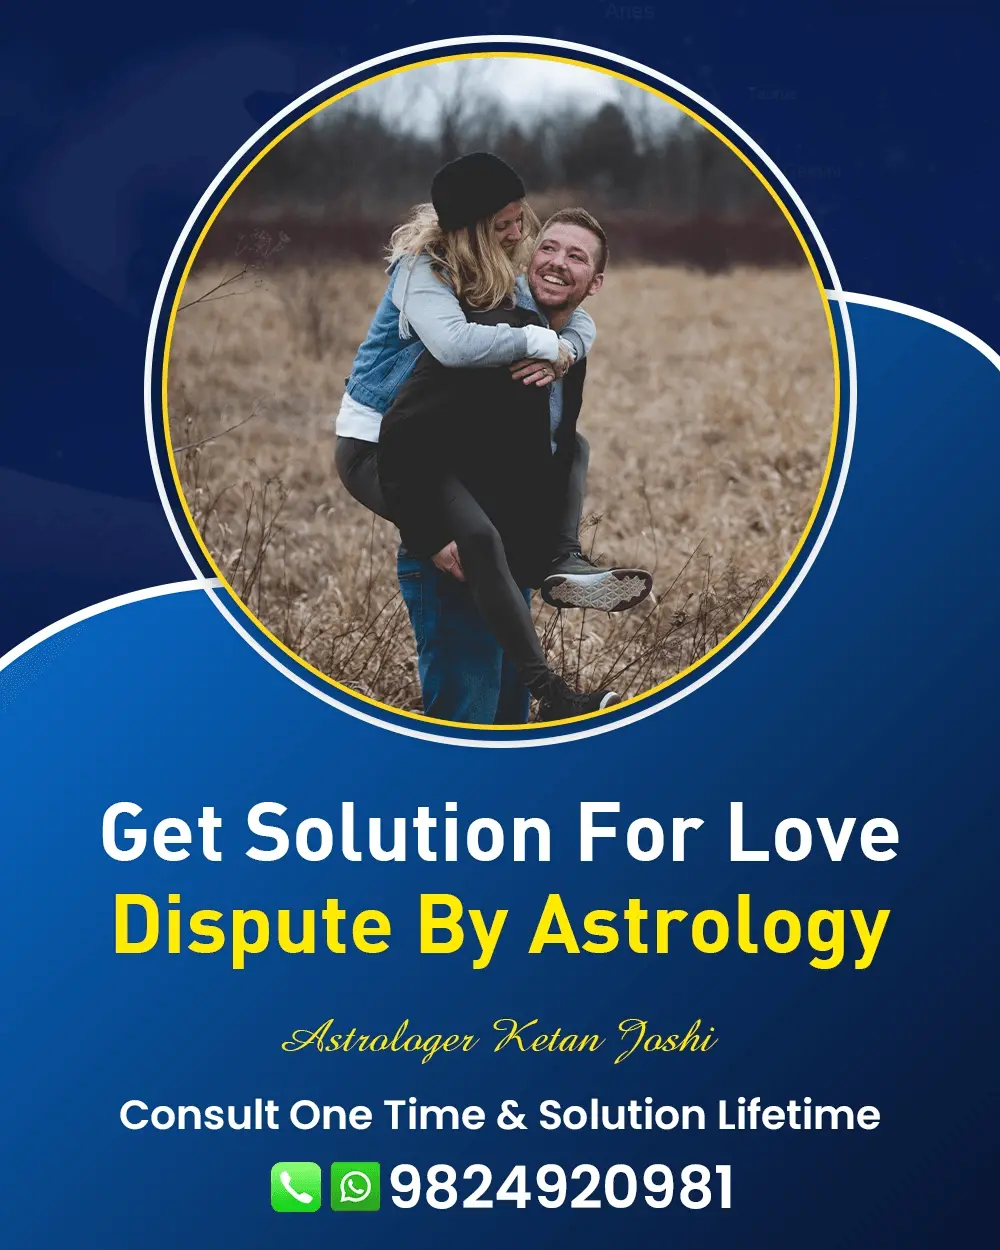 Love Problem Astrologer In Udaipur